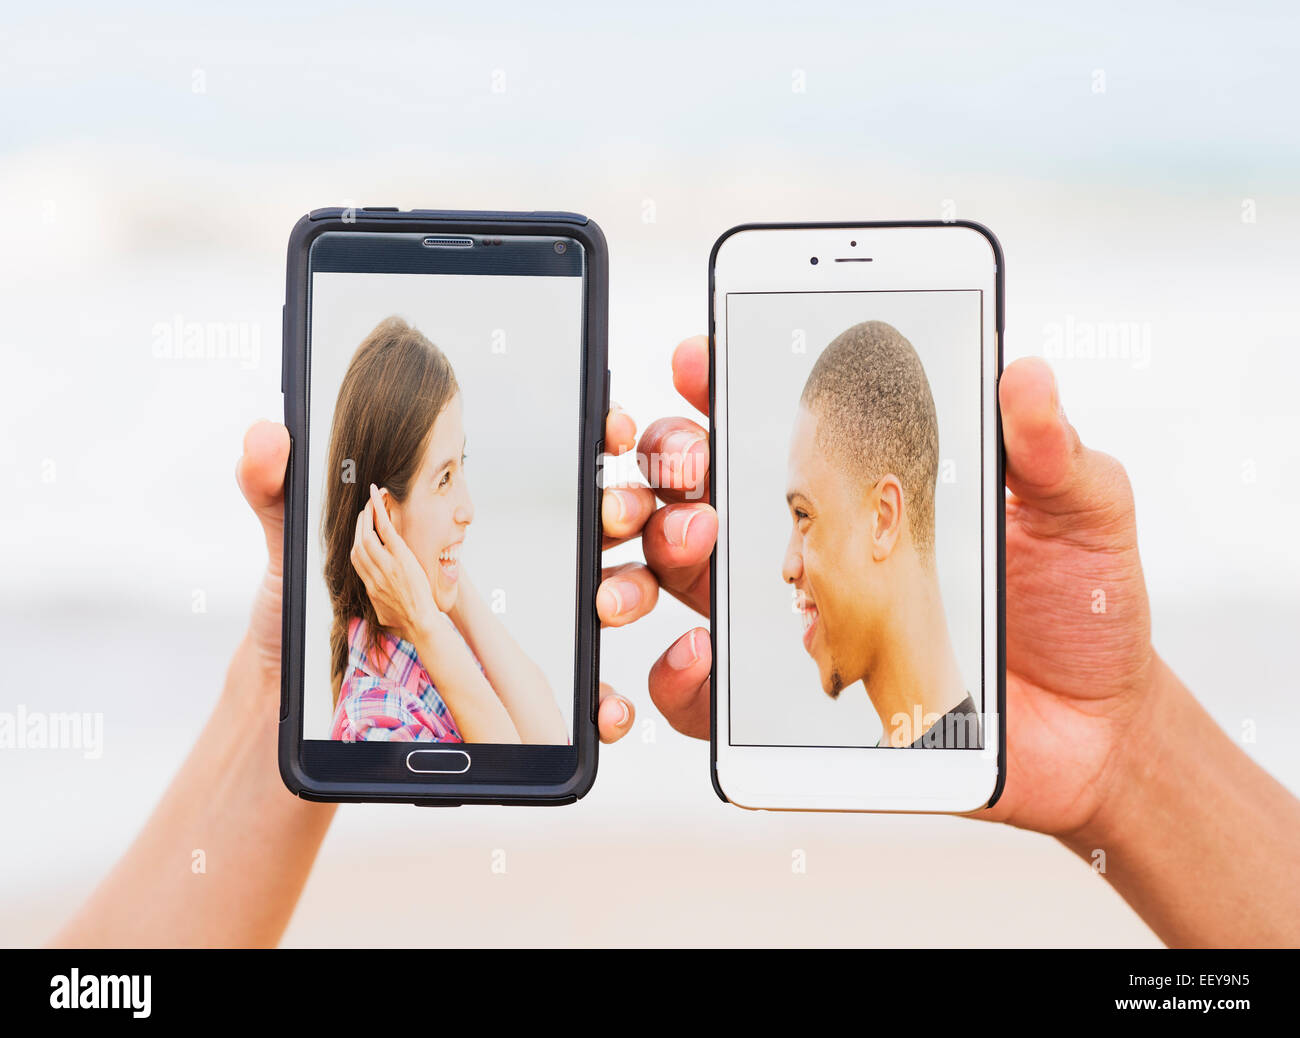 Hände halten Smartphones mit Bildern von jungen Menschen Stockfoto